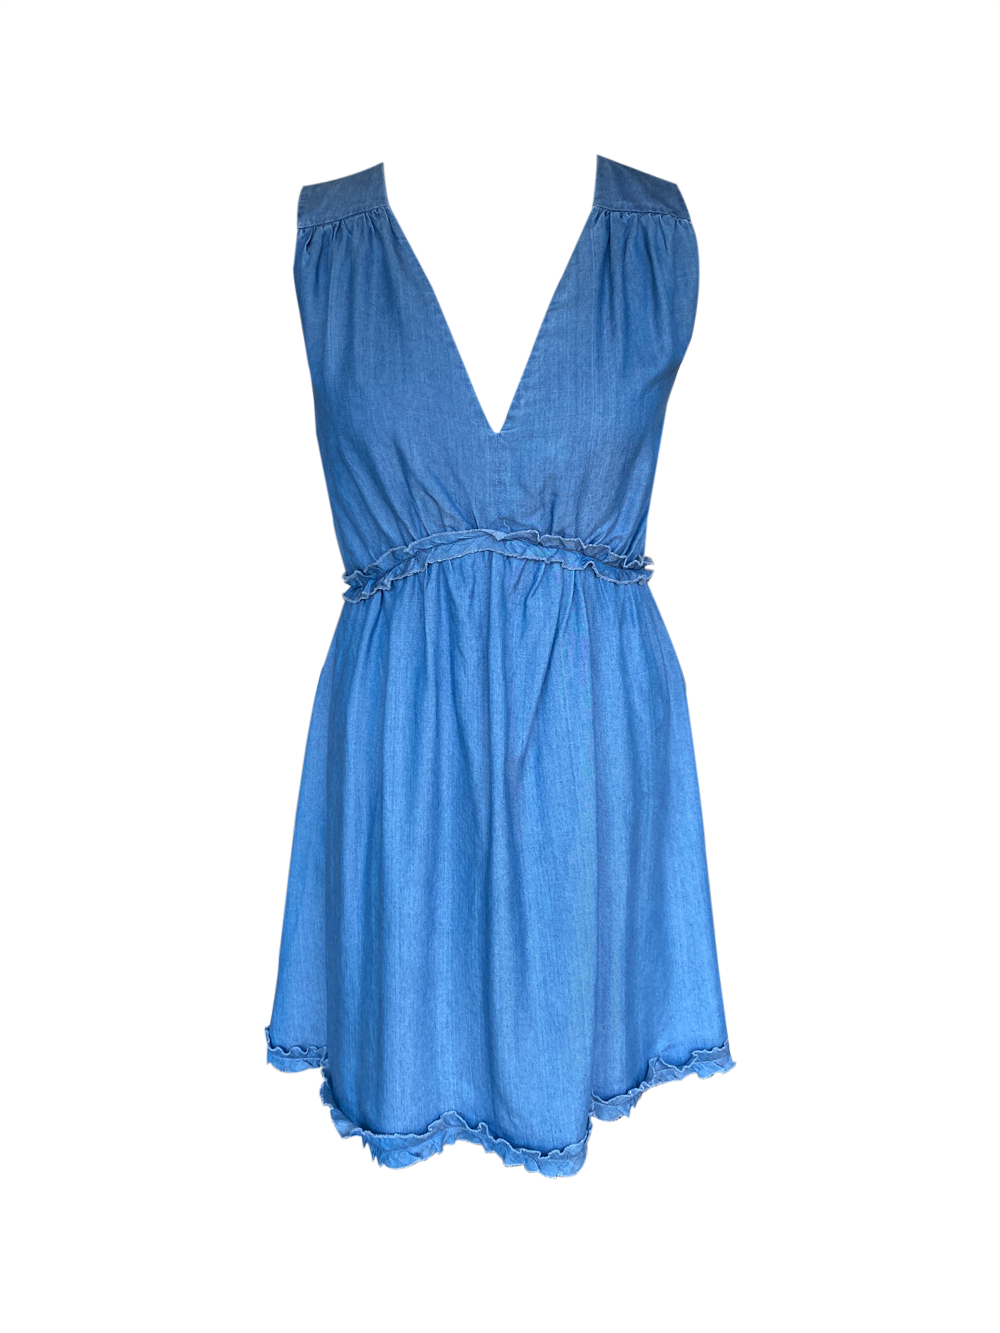 PINKO blue summer dress 38